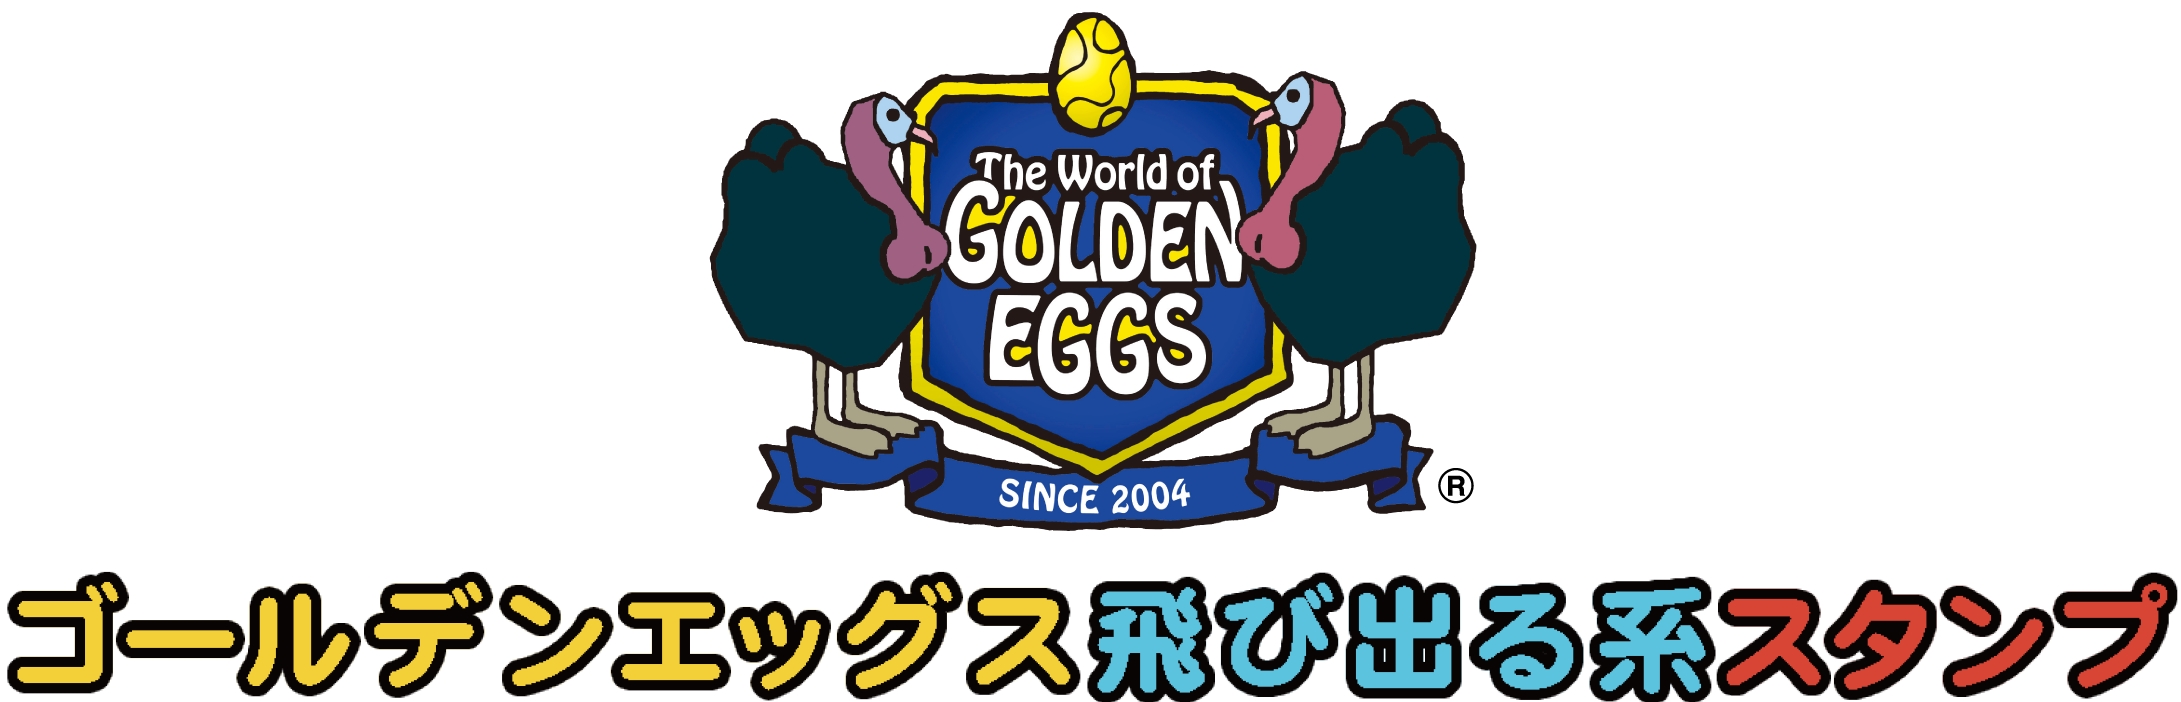 『ゴールデンエッグス』新作スタンプが「人気総合」ランキング第1位!